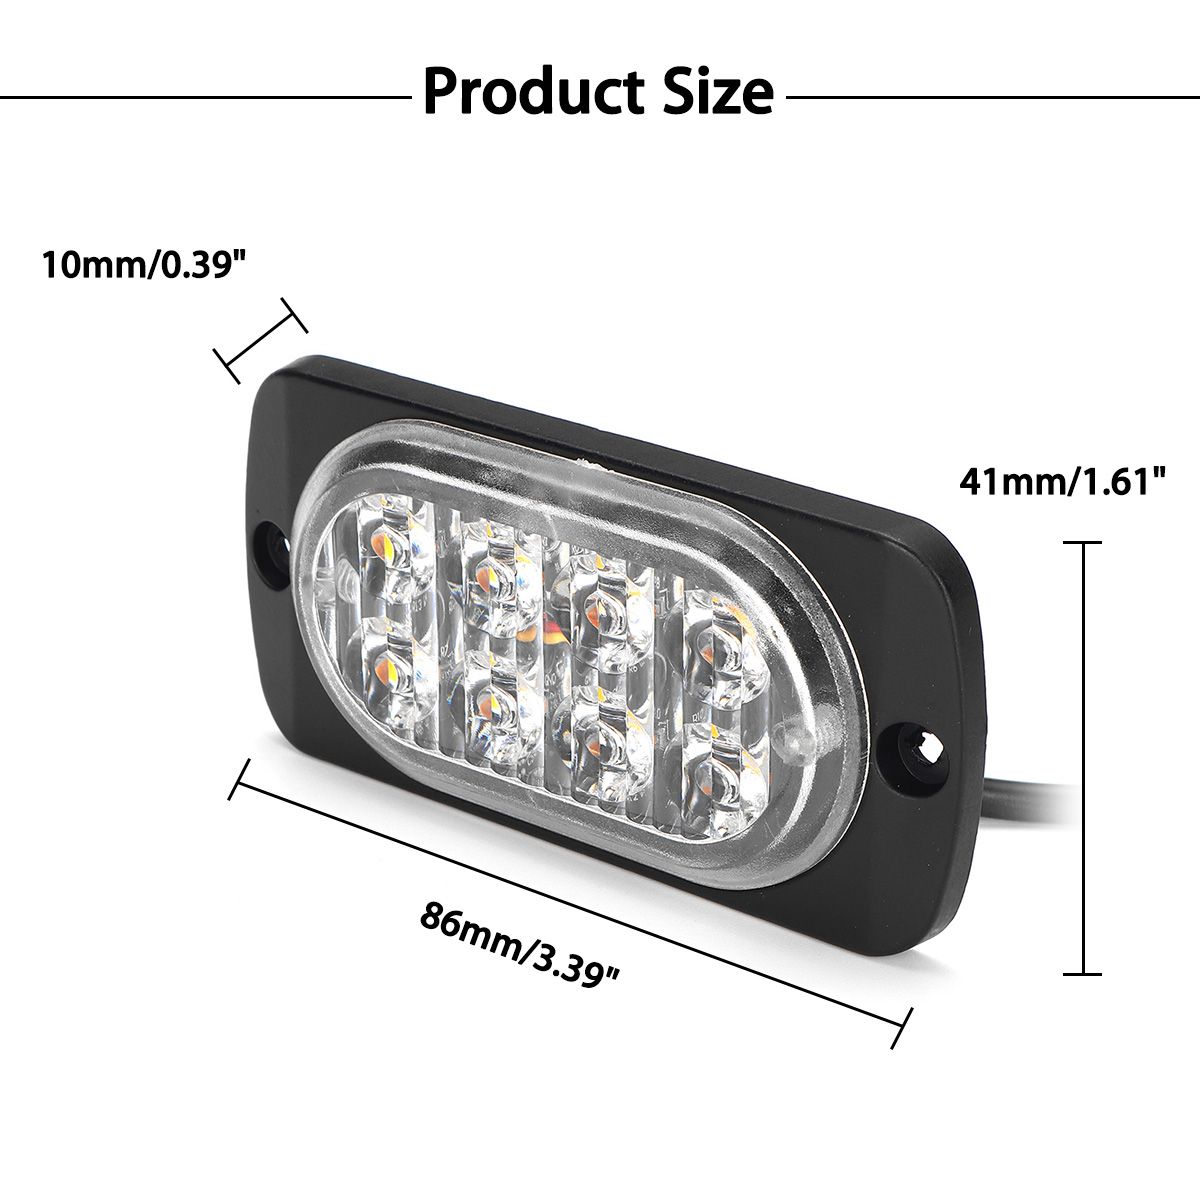 18-Flash-Modes-LED-Side-Marker-Lights-IP67-Waterproof-1PCS-for-Trailer-Truck-Caravans-Utes-Boat-1555228